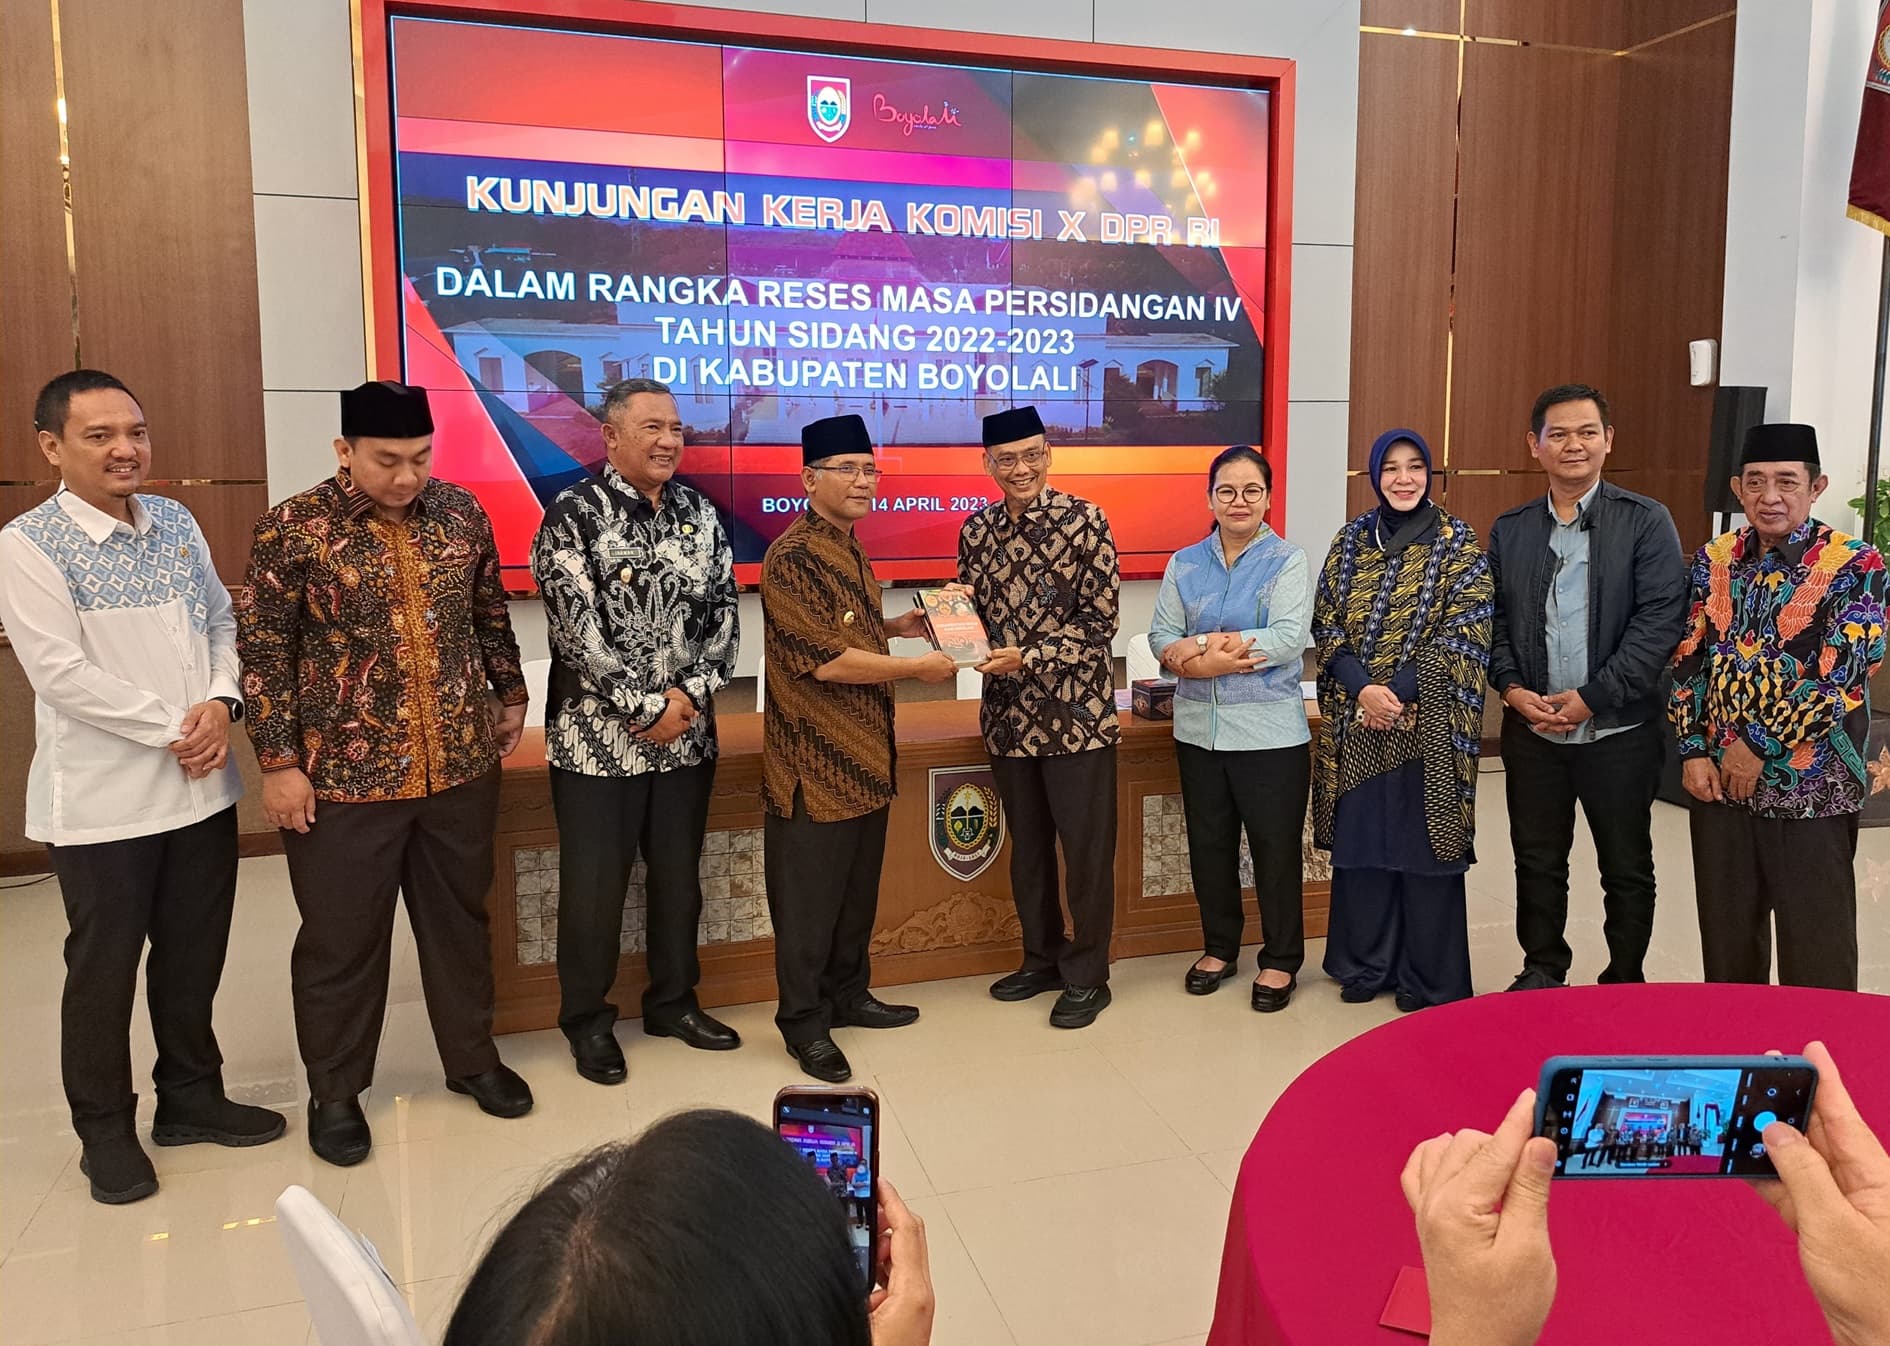 Kunjungan Kerja Komisi X DPR RI Pada Masa Reses Masa Persidangan IV Tahun Sidang 2022-2023 di Kabupaten Boyolali, Jawa Tengah